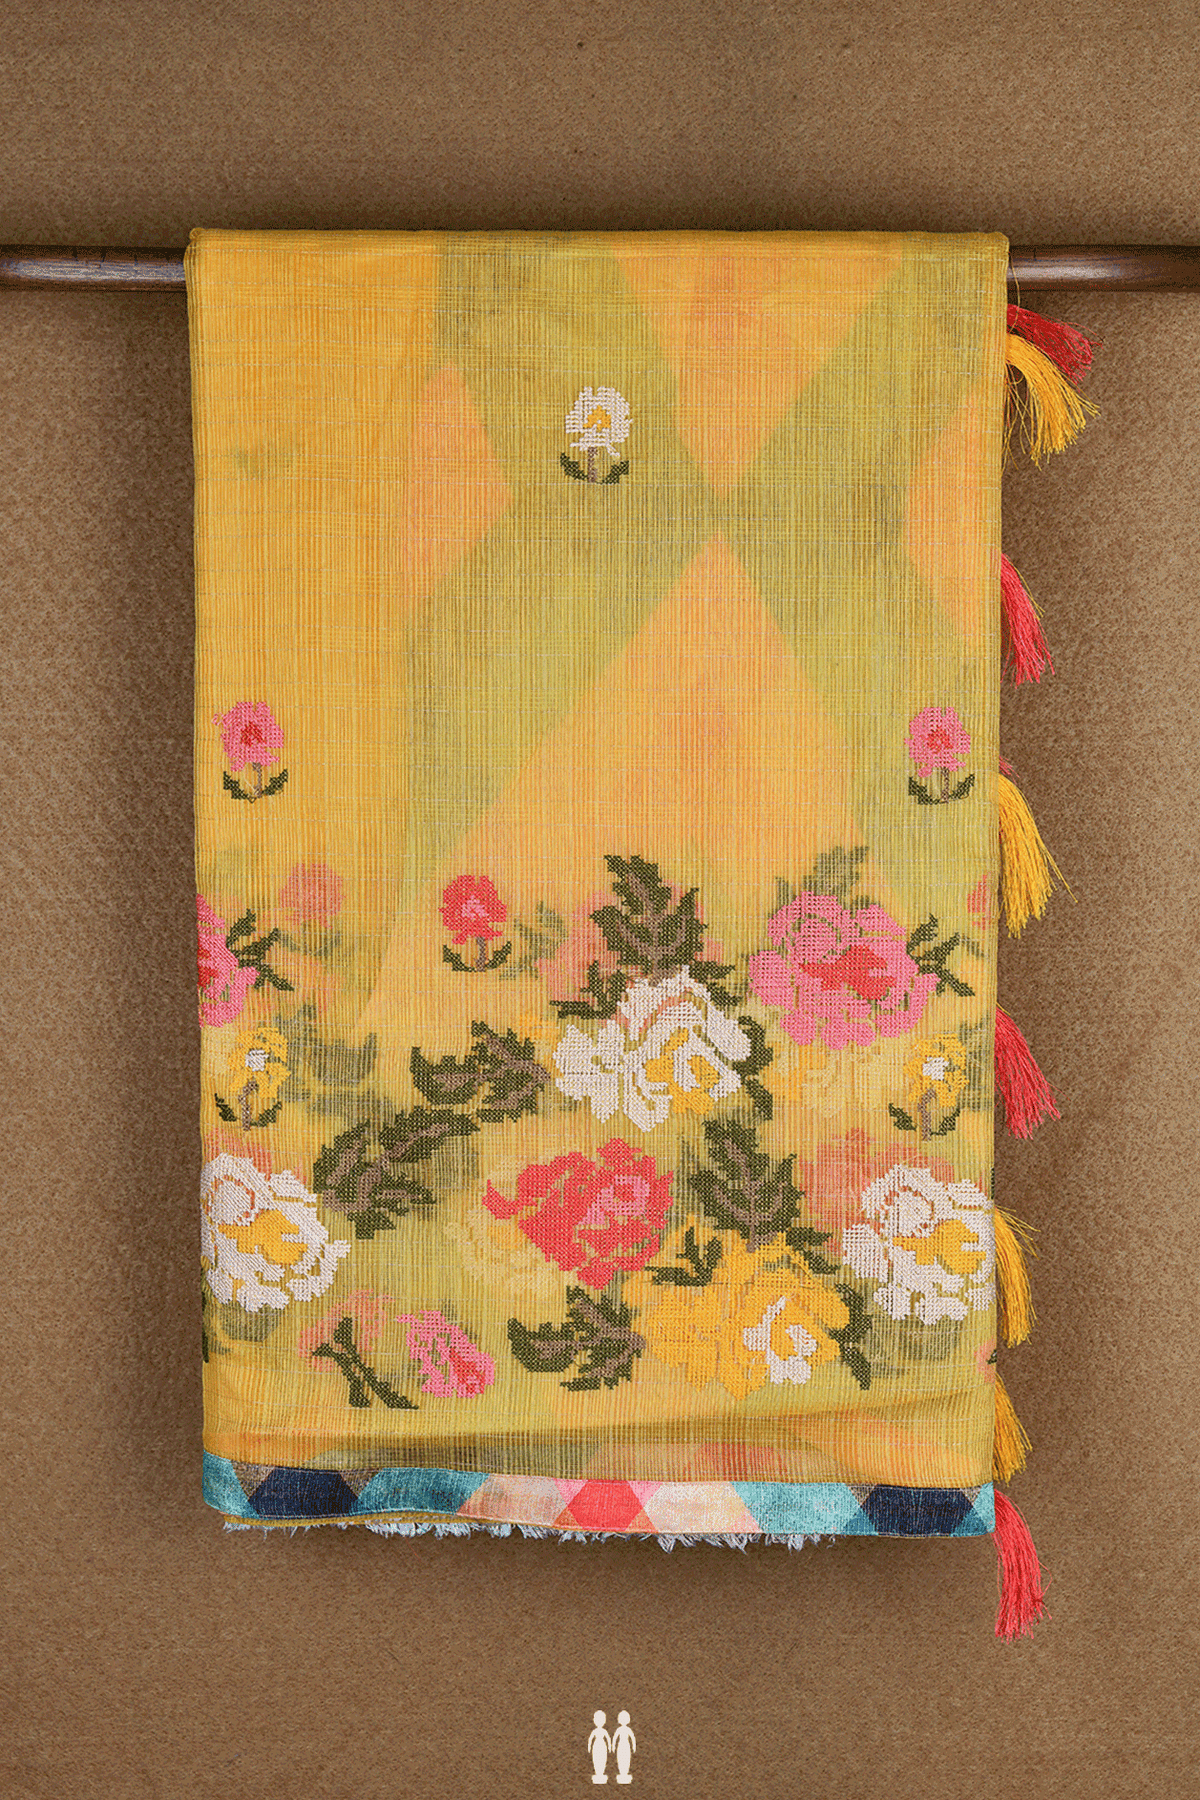 Floral Threadwork Buttas Yellow Kota Cotton Saree